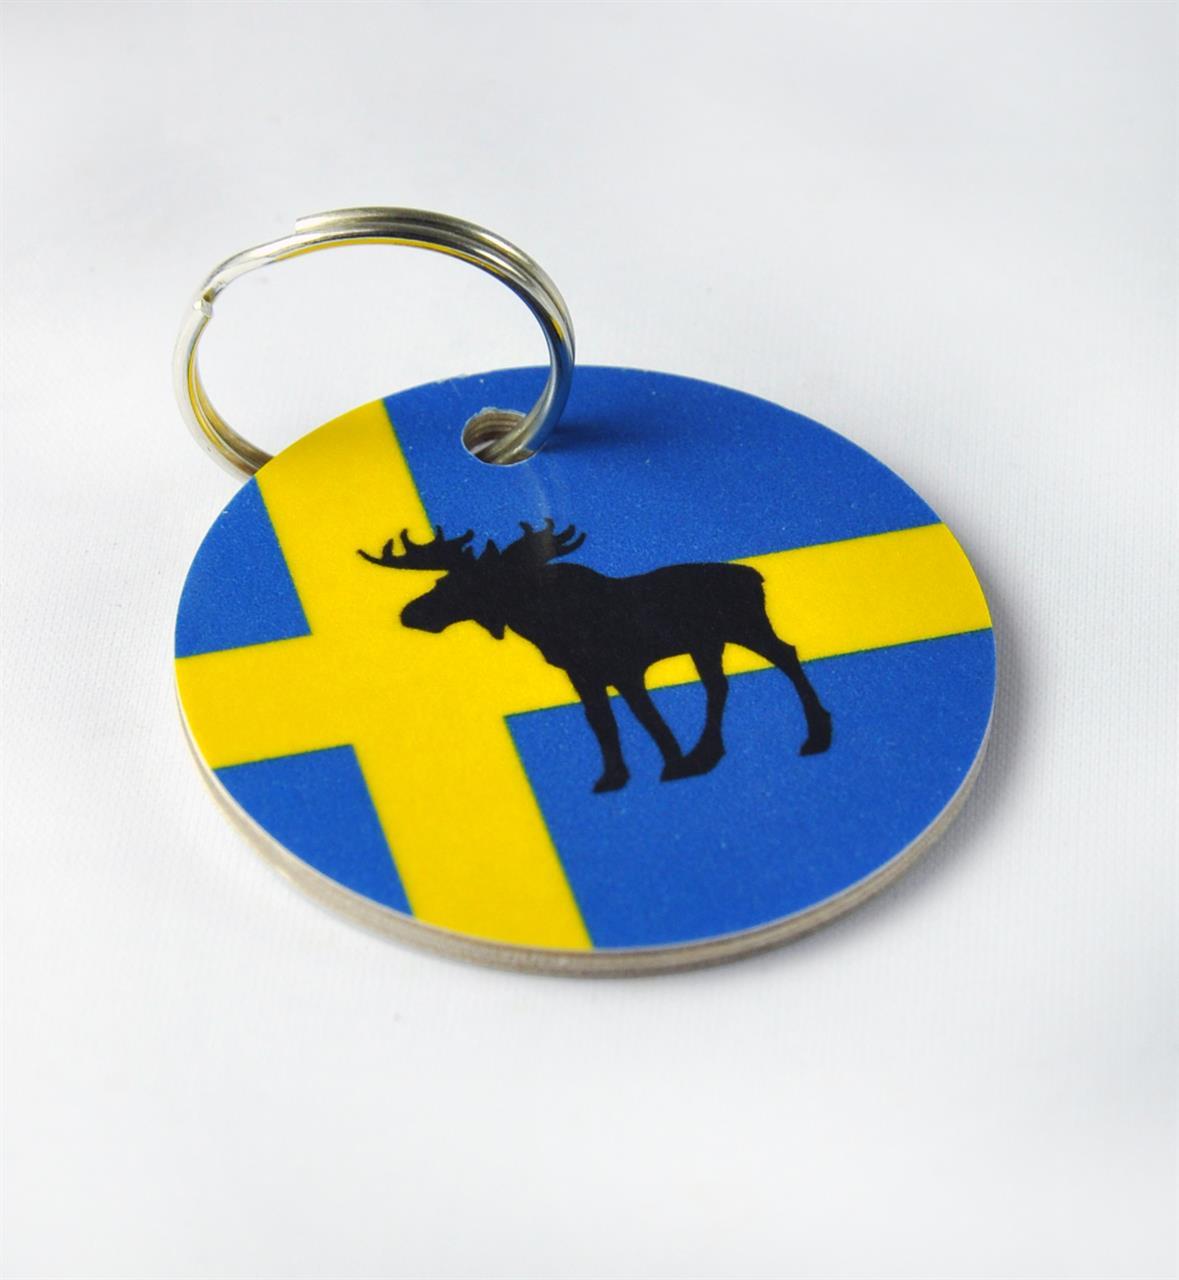 Nyckelring, Älg, svenska flaggan